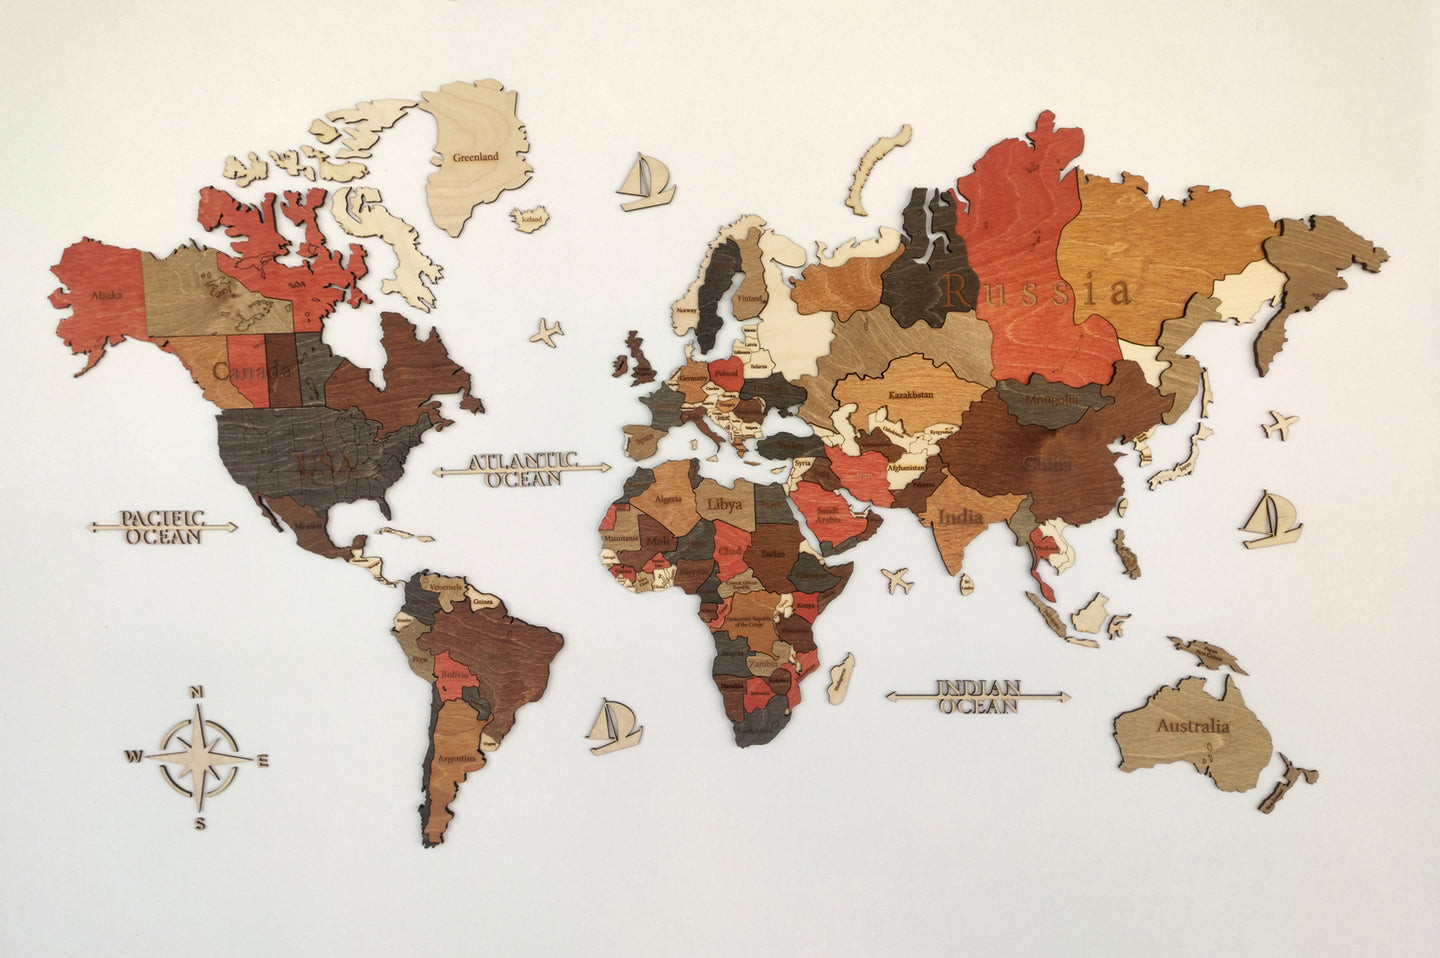 Ξύλινος τρισδιάστατος παγκόσμιος χάρτης τοίχου - (115 x 65) / Με αγγλικά ονόματα